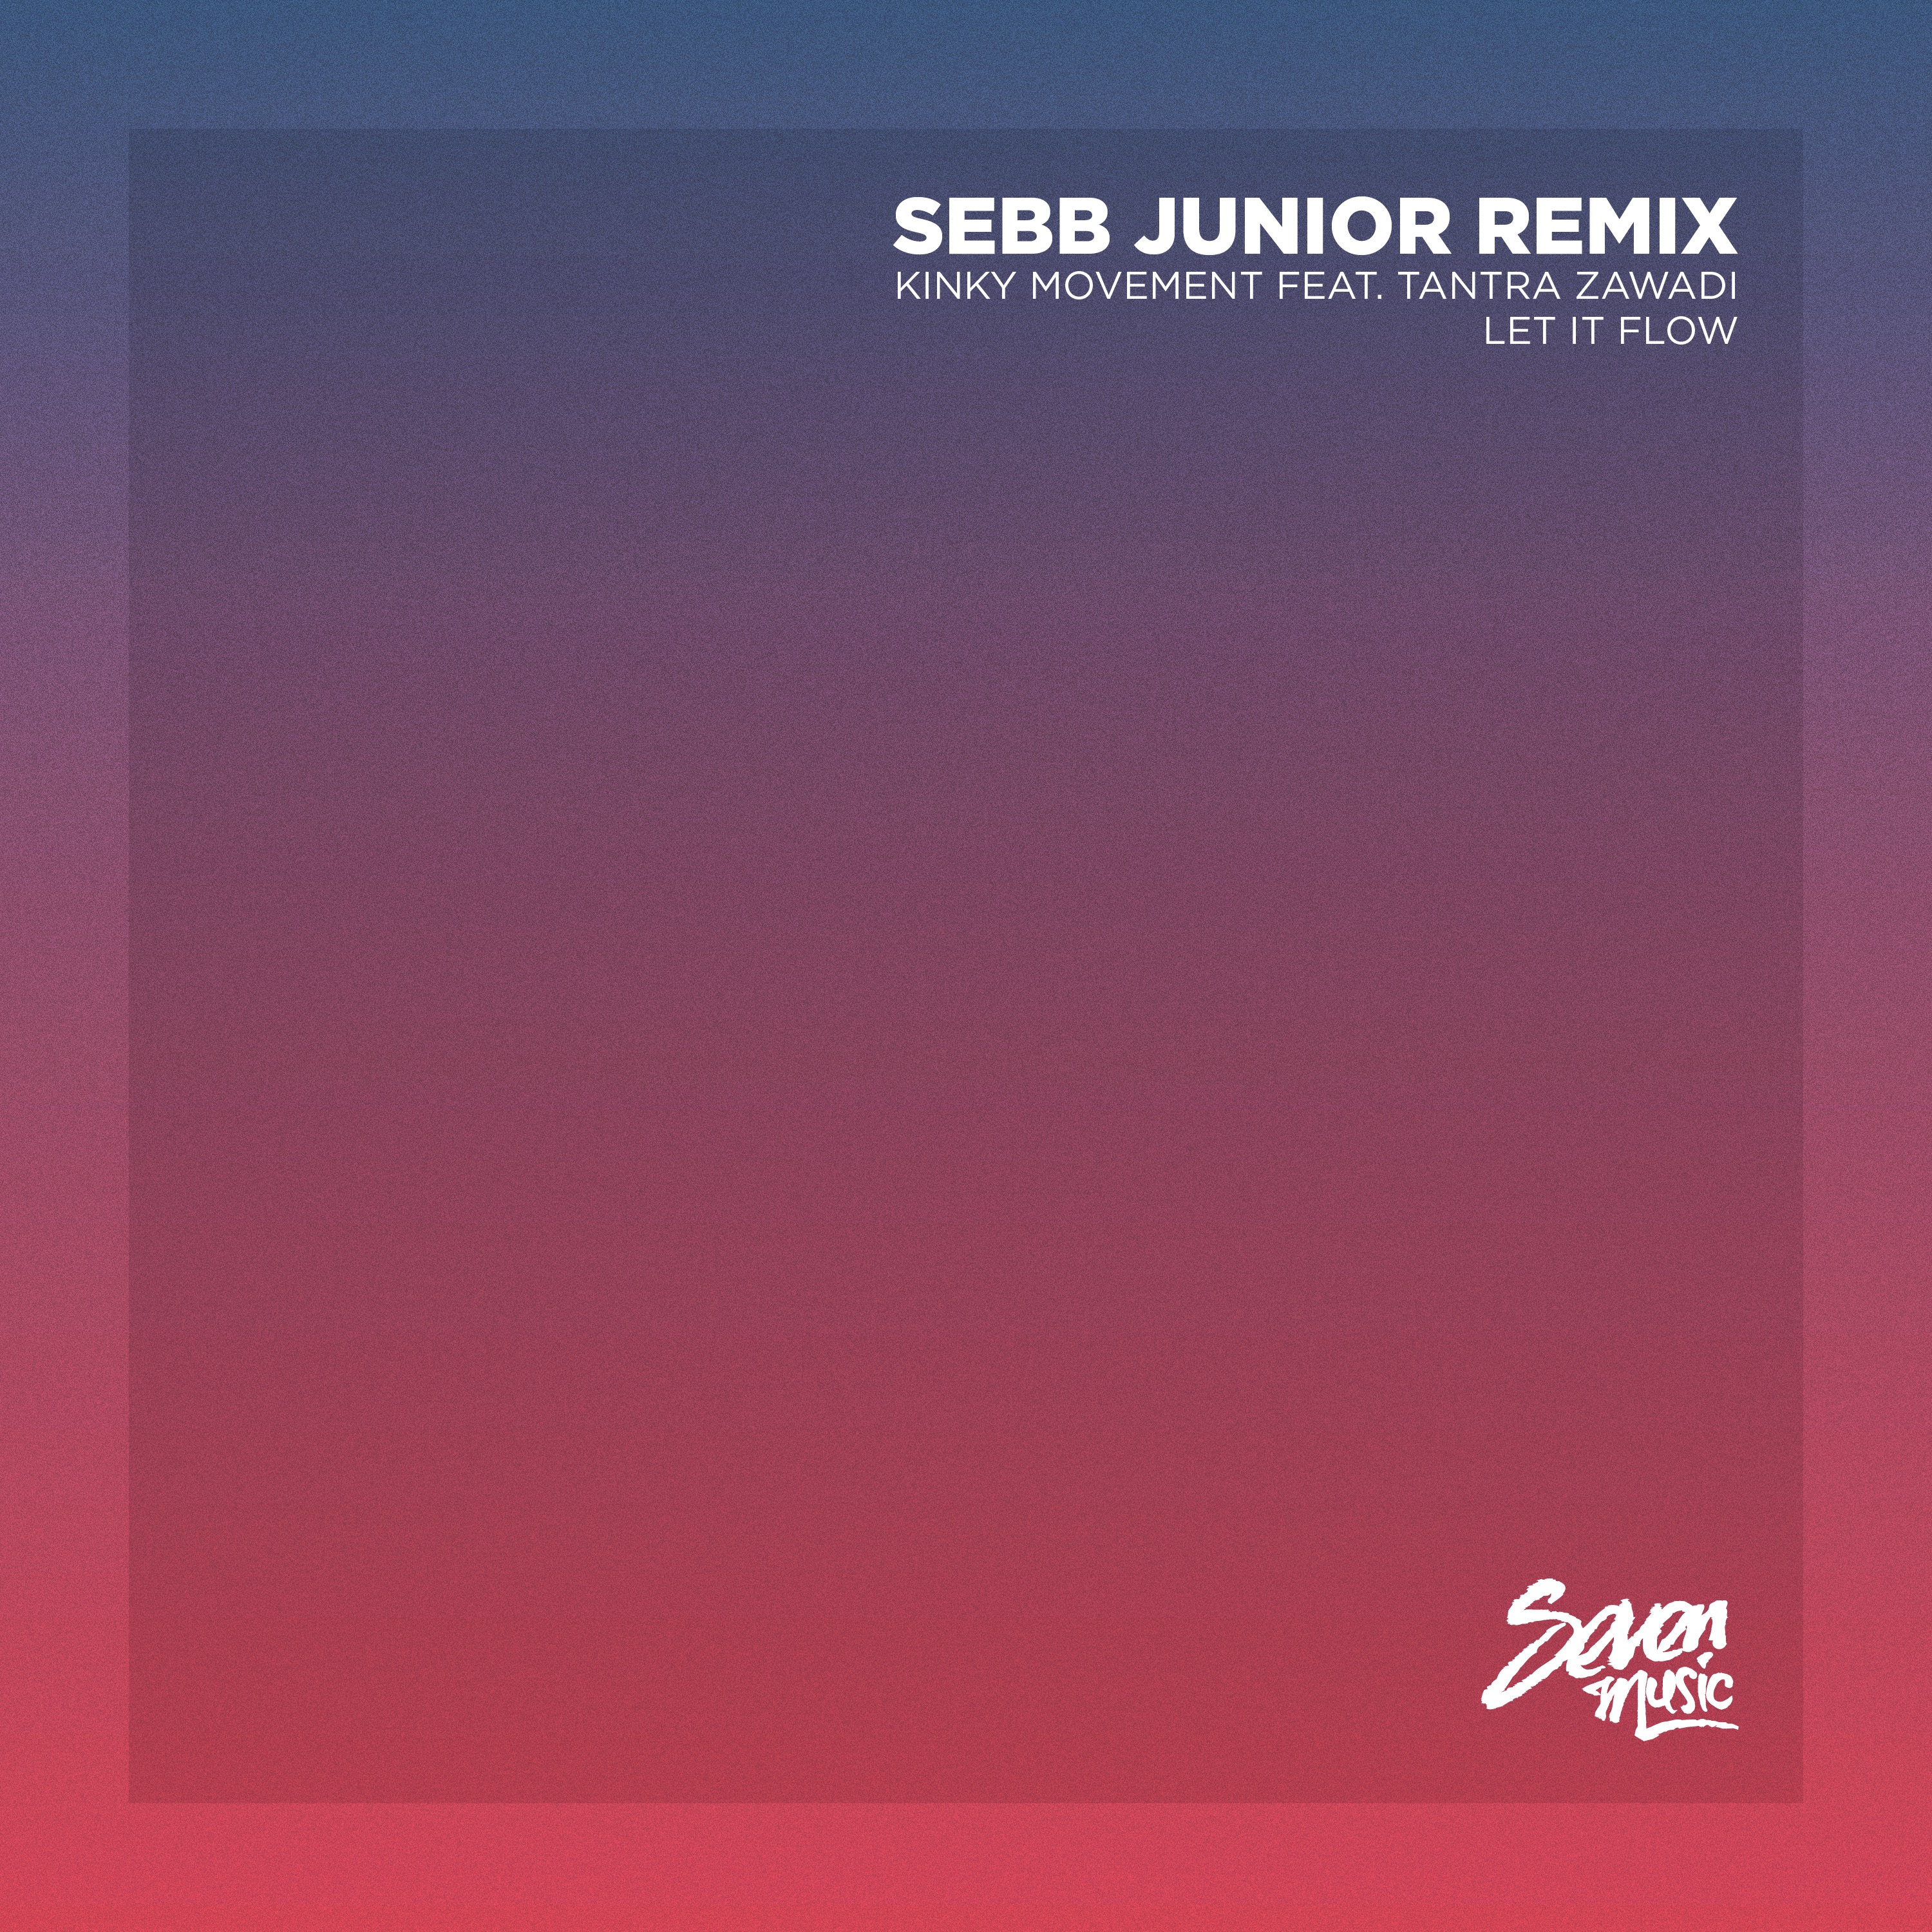 Elŝuti Premiere: Kinky Movement - Let It Flow (Sebb Junior Remix) - Seven Music